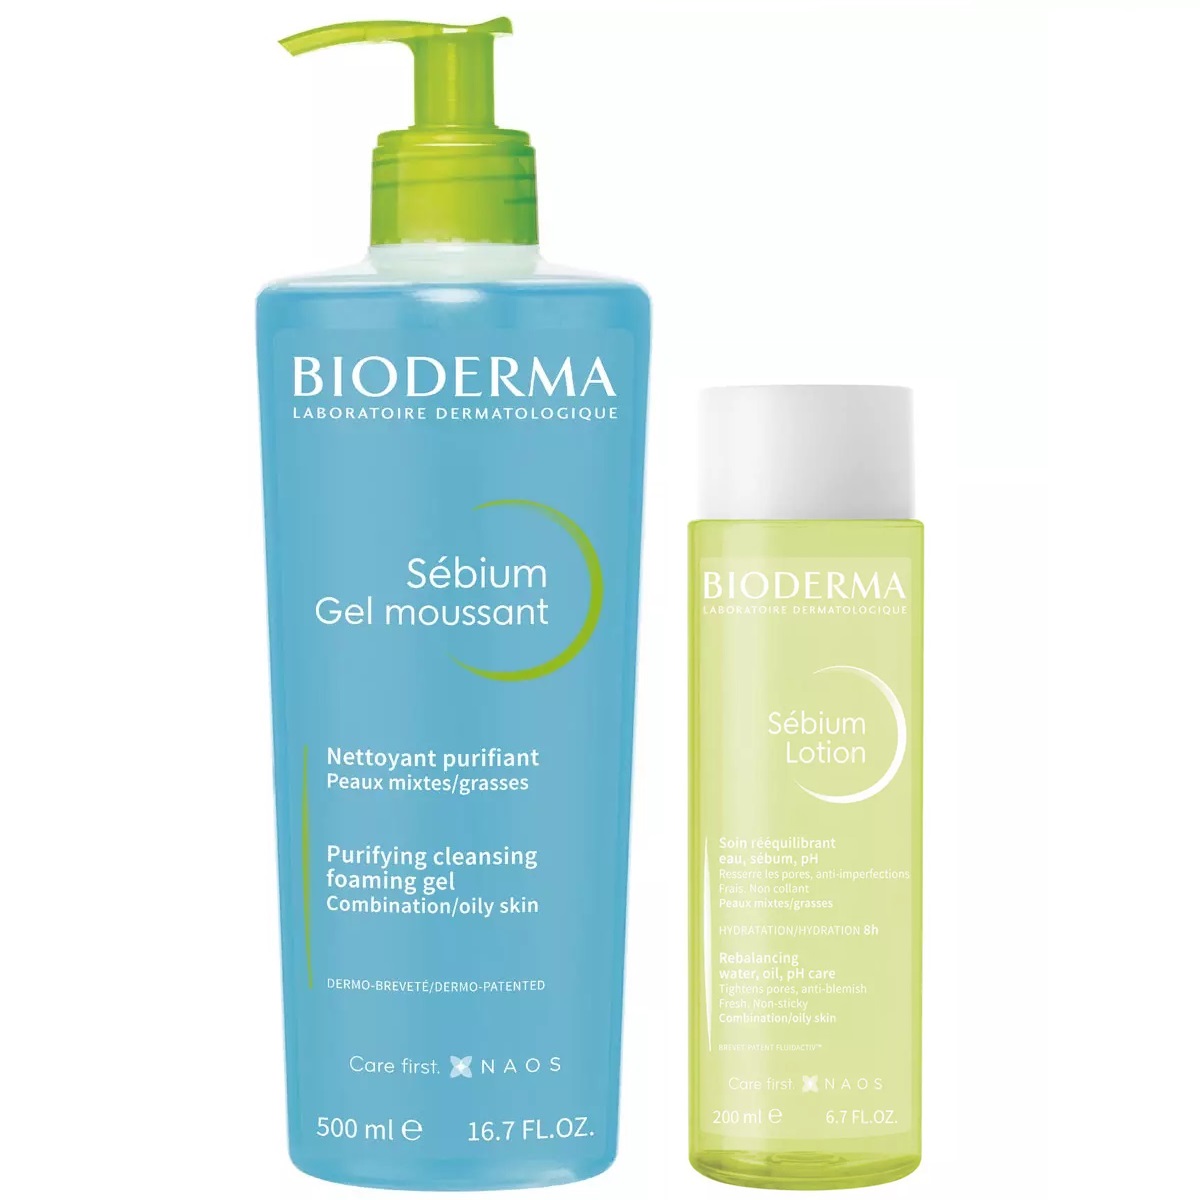 цена Bioderma Набор для очищения жирной кожи: гель, 500 мл + лосьон, 200 мл (Bioderma, Sebium)